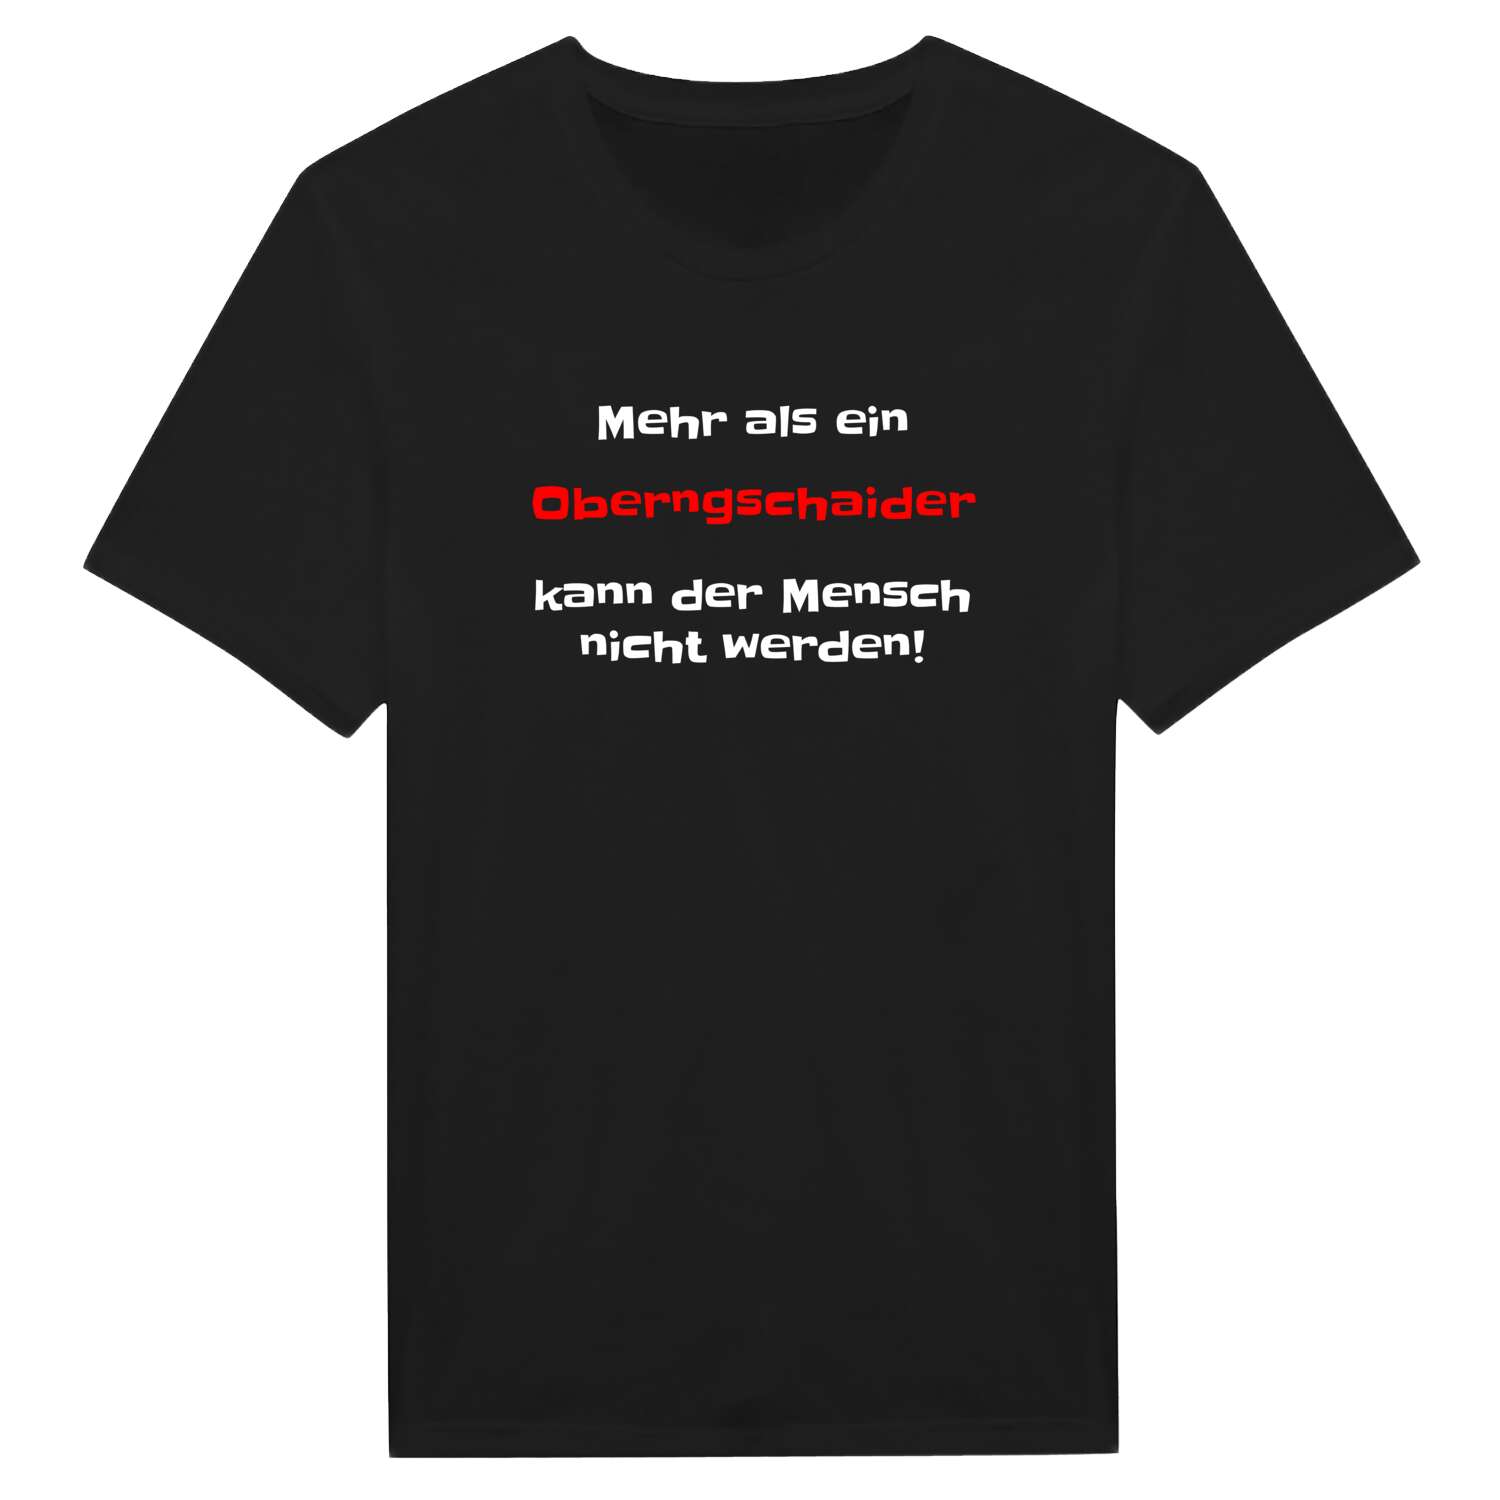 Oberngschaid T-Shirt »Mehr als ein«